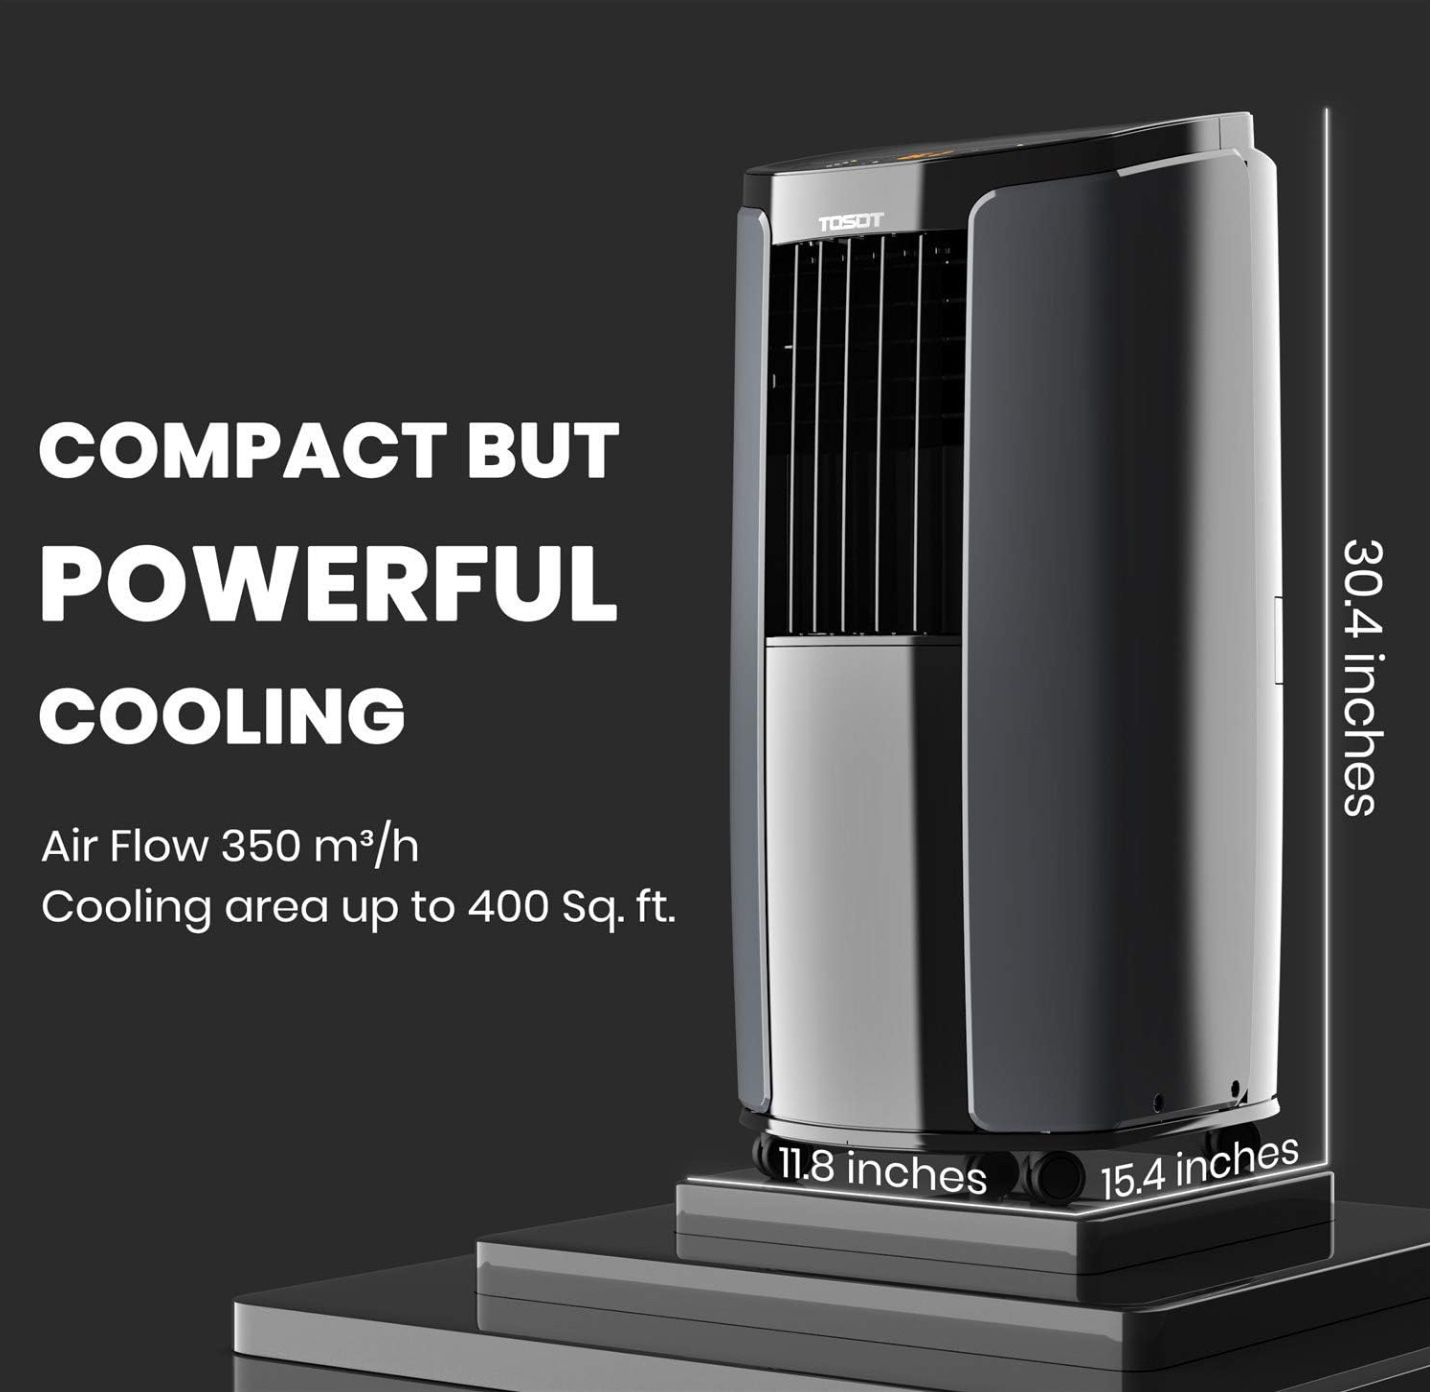 NEW TOSOT Portable Air Conditioner 10,000 BTU-ASHRAE  6,000 BTU